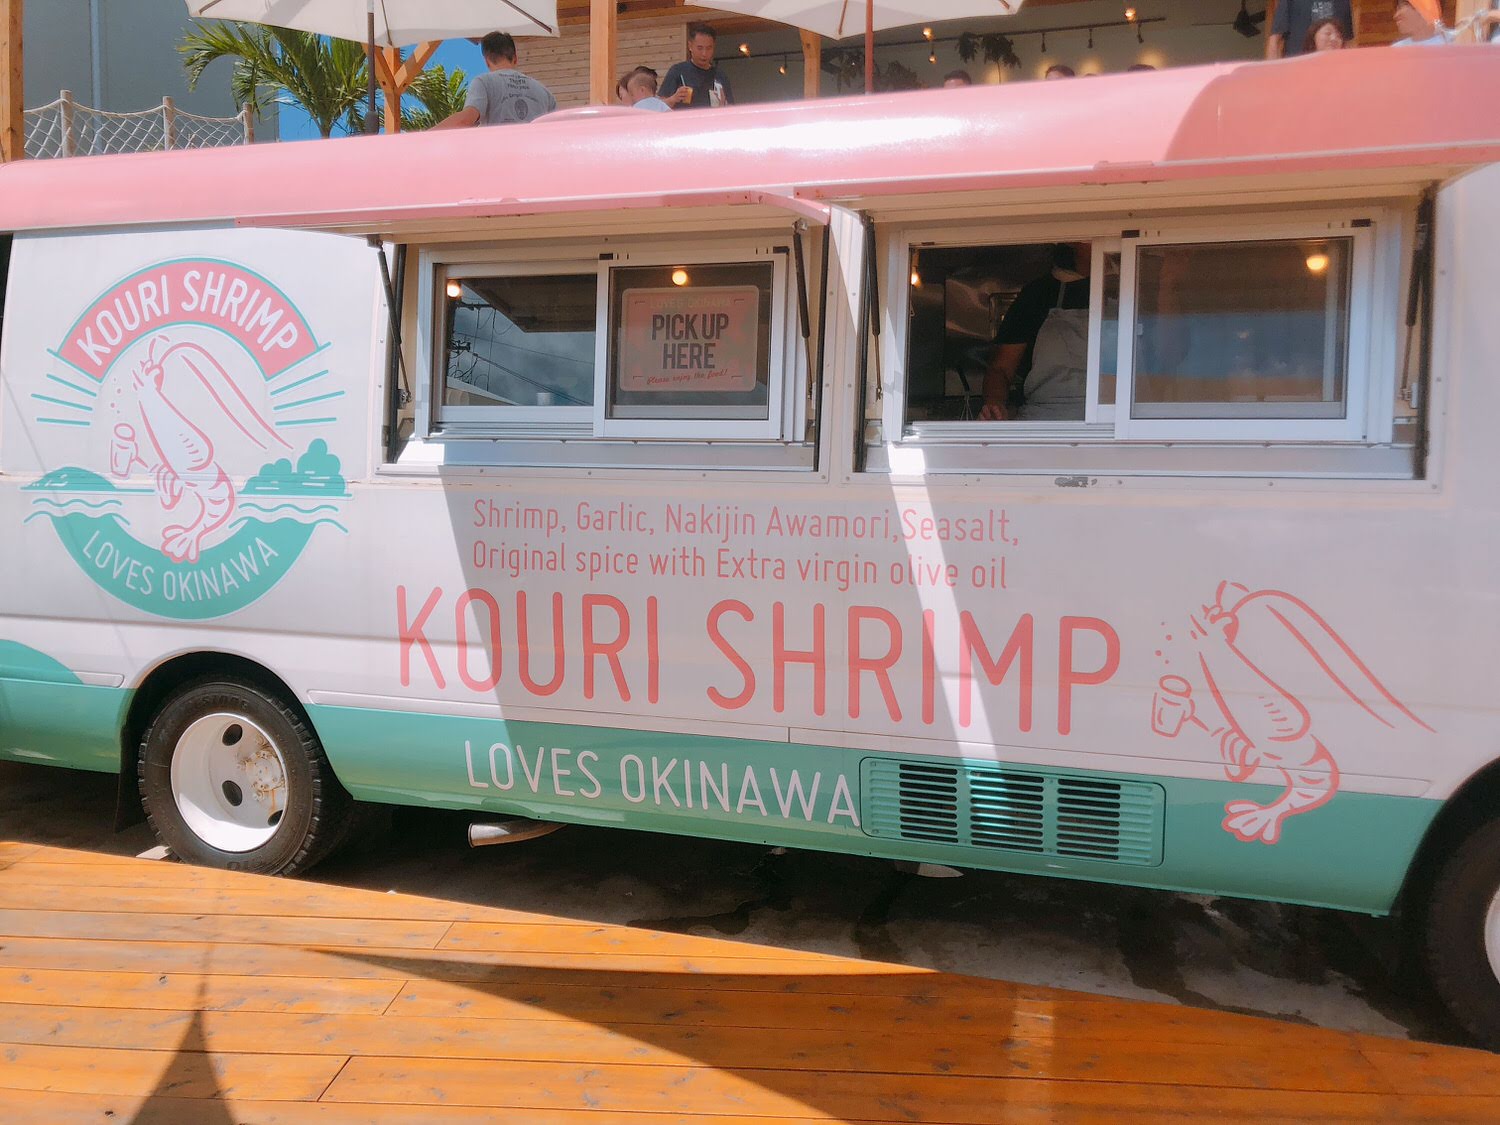  KOURI SHRIMP 蝦蝦飯